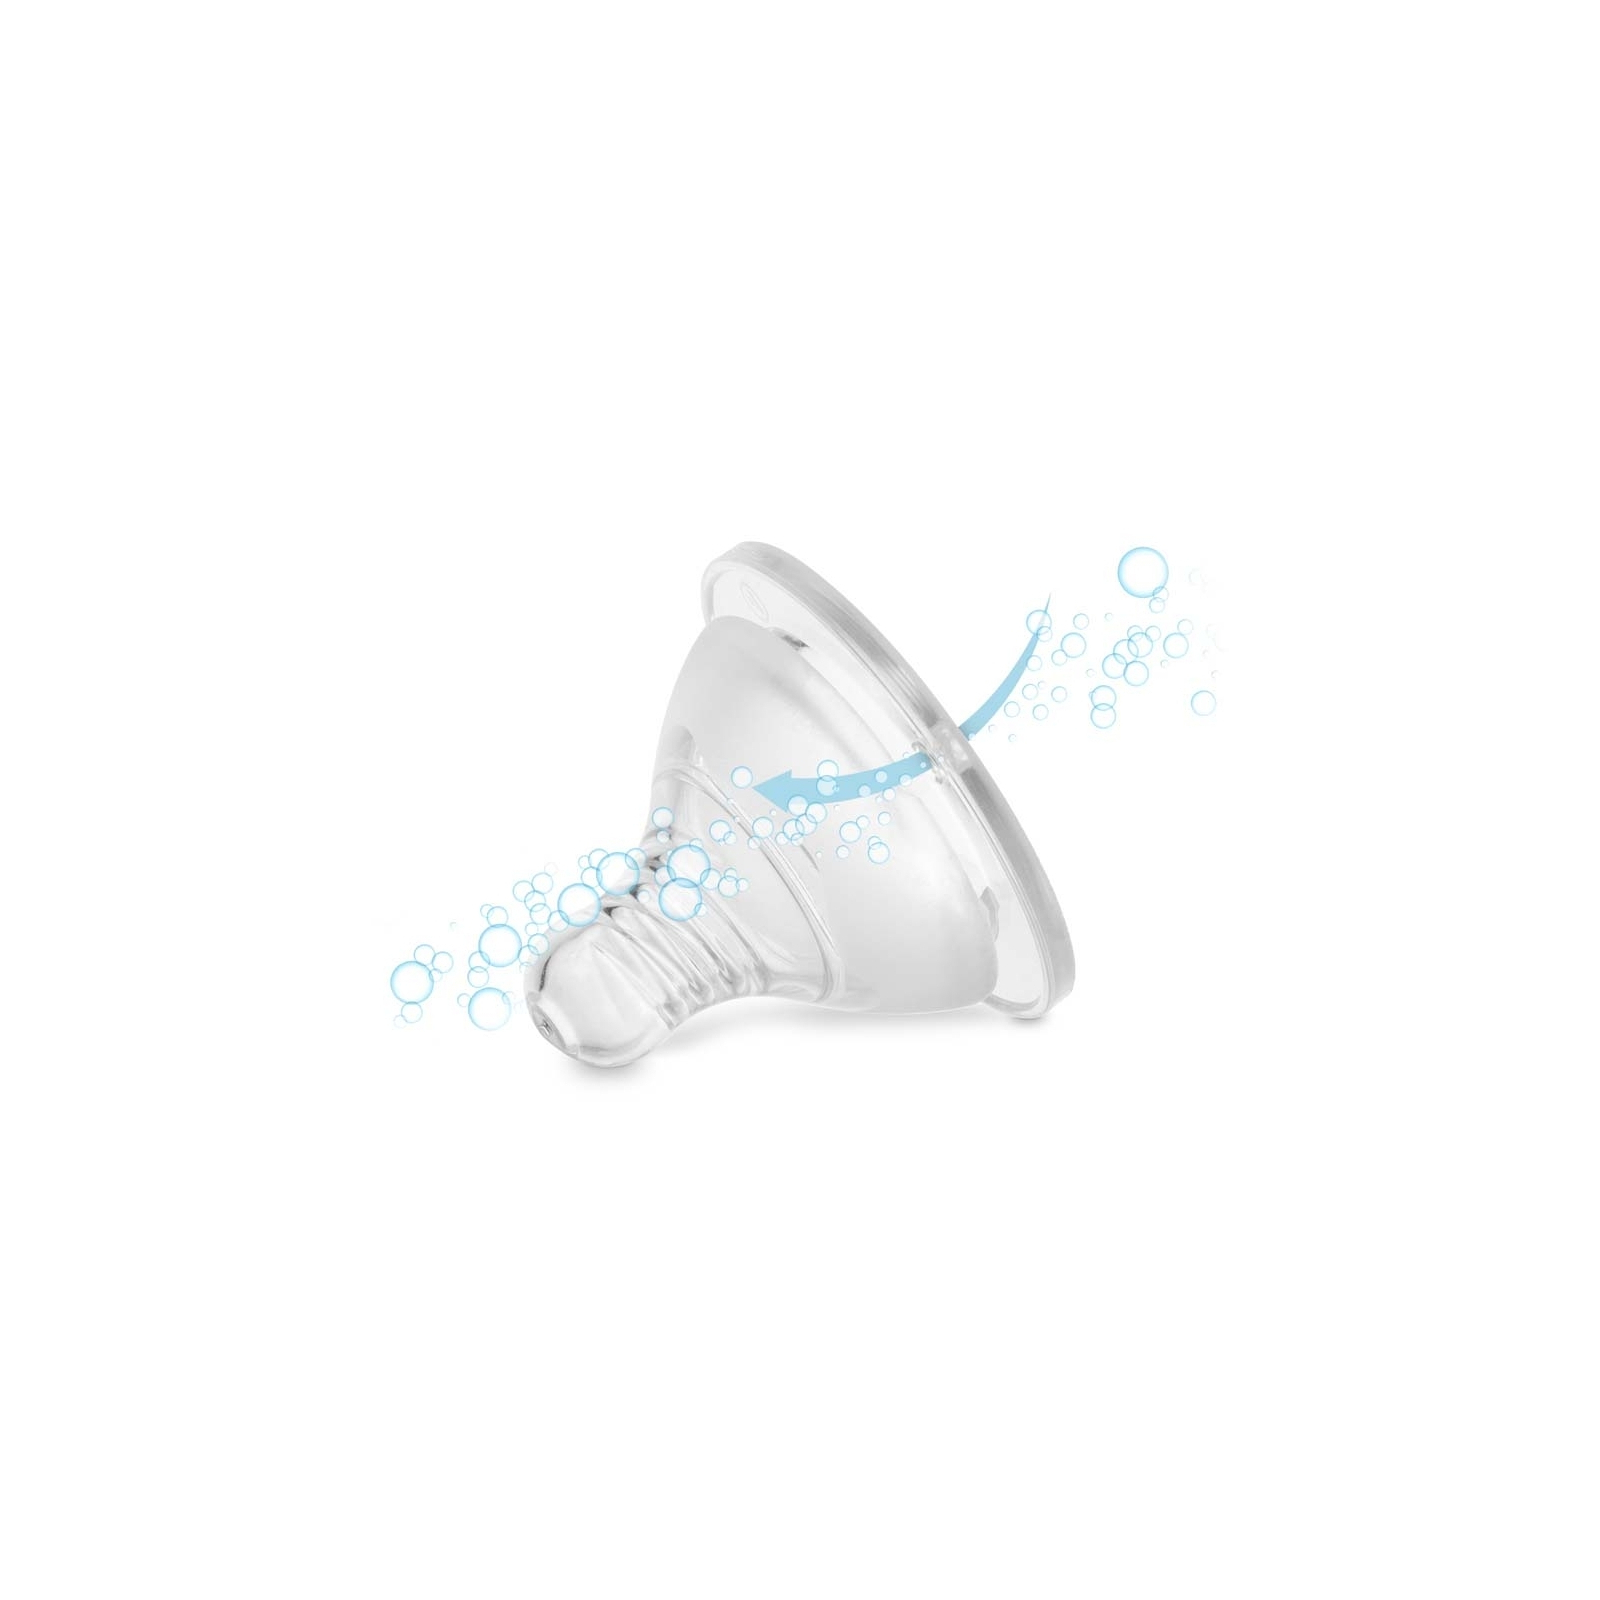 Соска Baboo силиконовая, широкая горлышка, медленный поток, 0+ мес (4-110) изображение 4